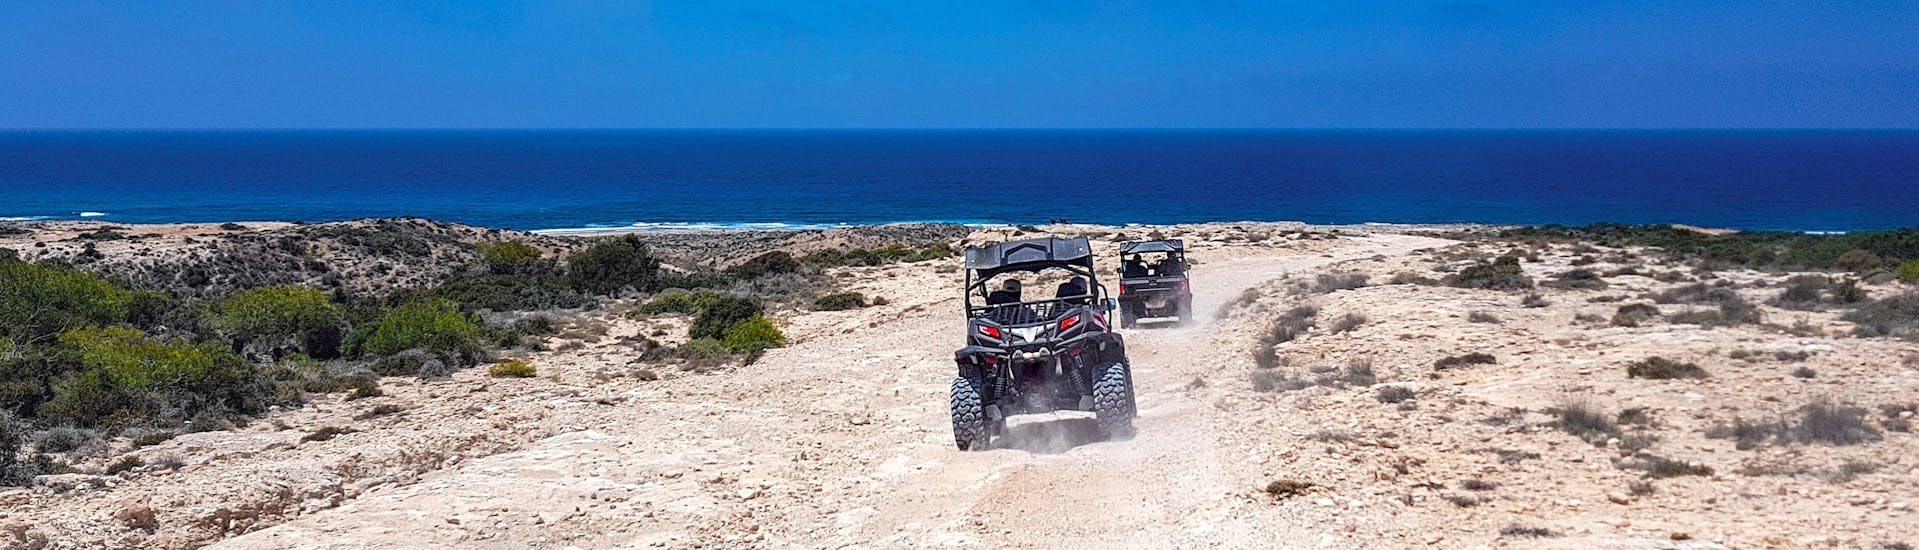 Due buggy si dirigono verso la costa durante un'attività per quad, ATV e buggy.